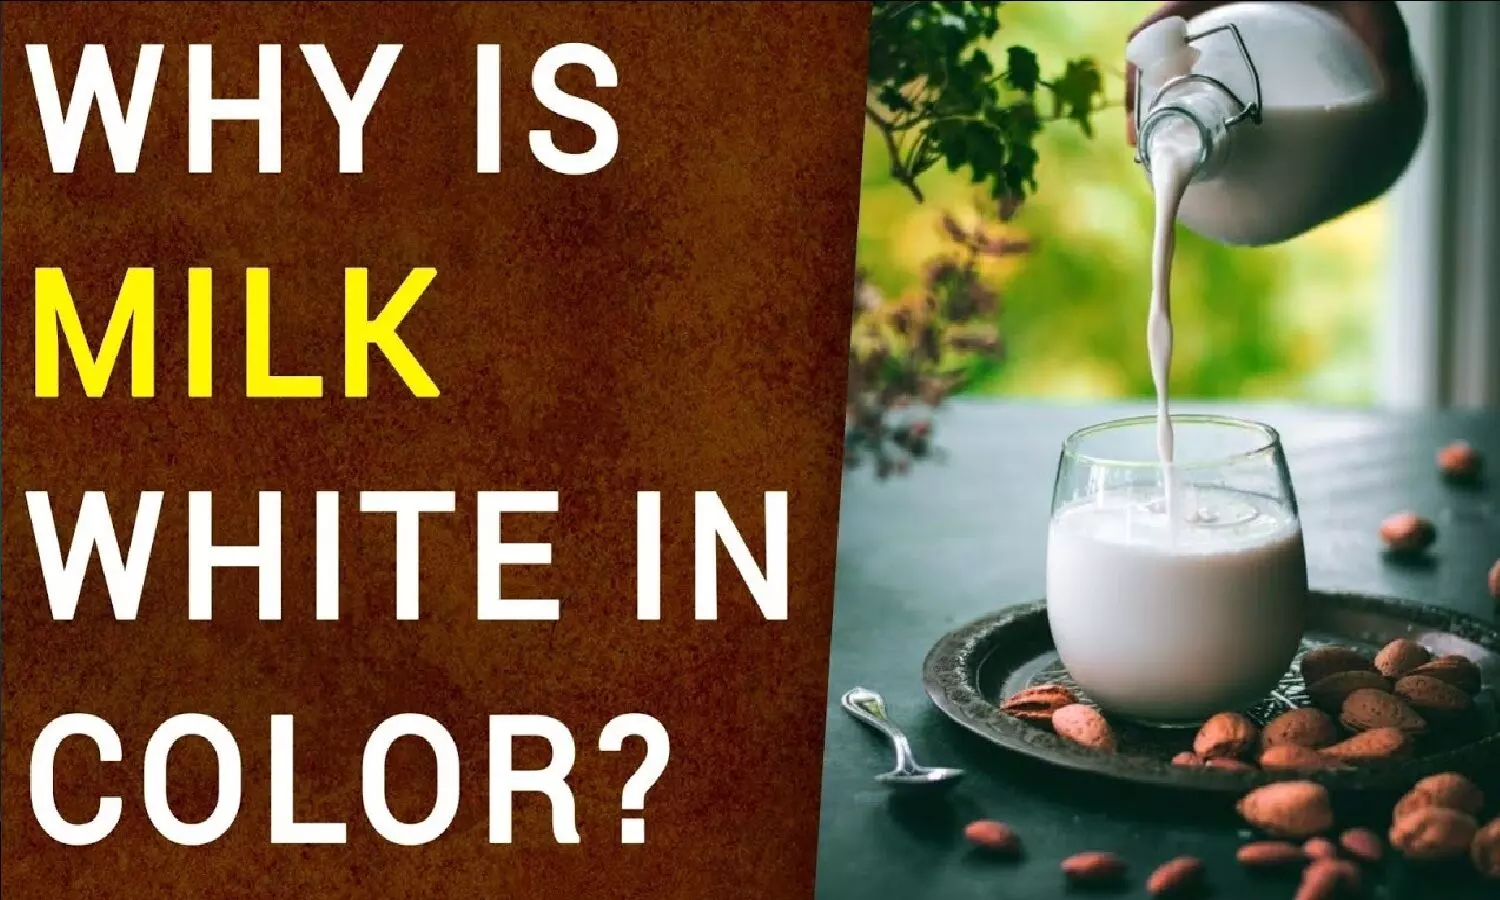 Why Color Of Milk Is White: दूध का रंग सफ़ेद क्यों होता है? कभी सोचा है!